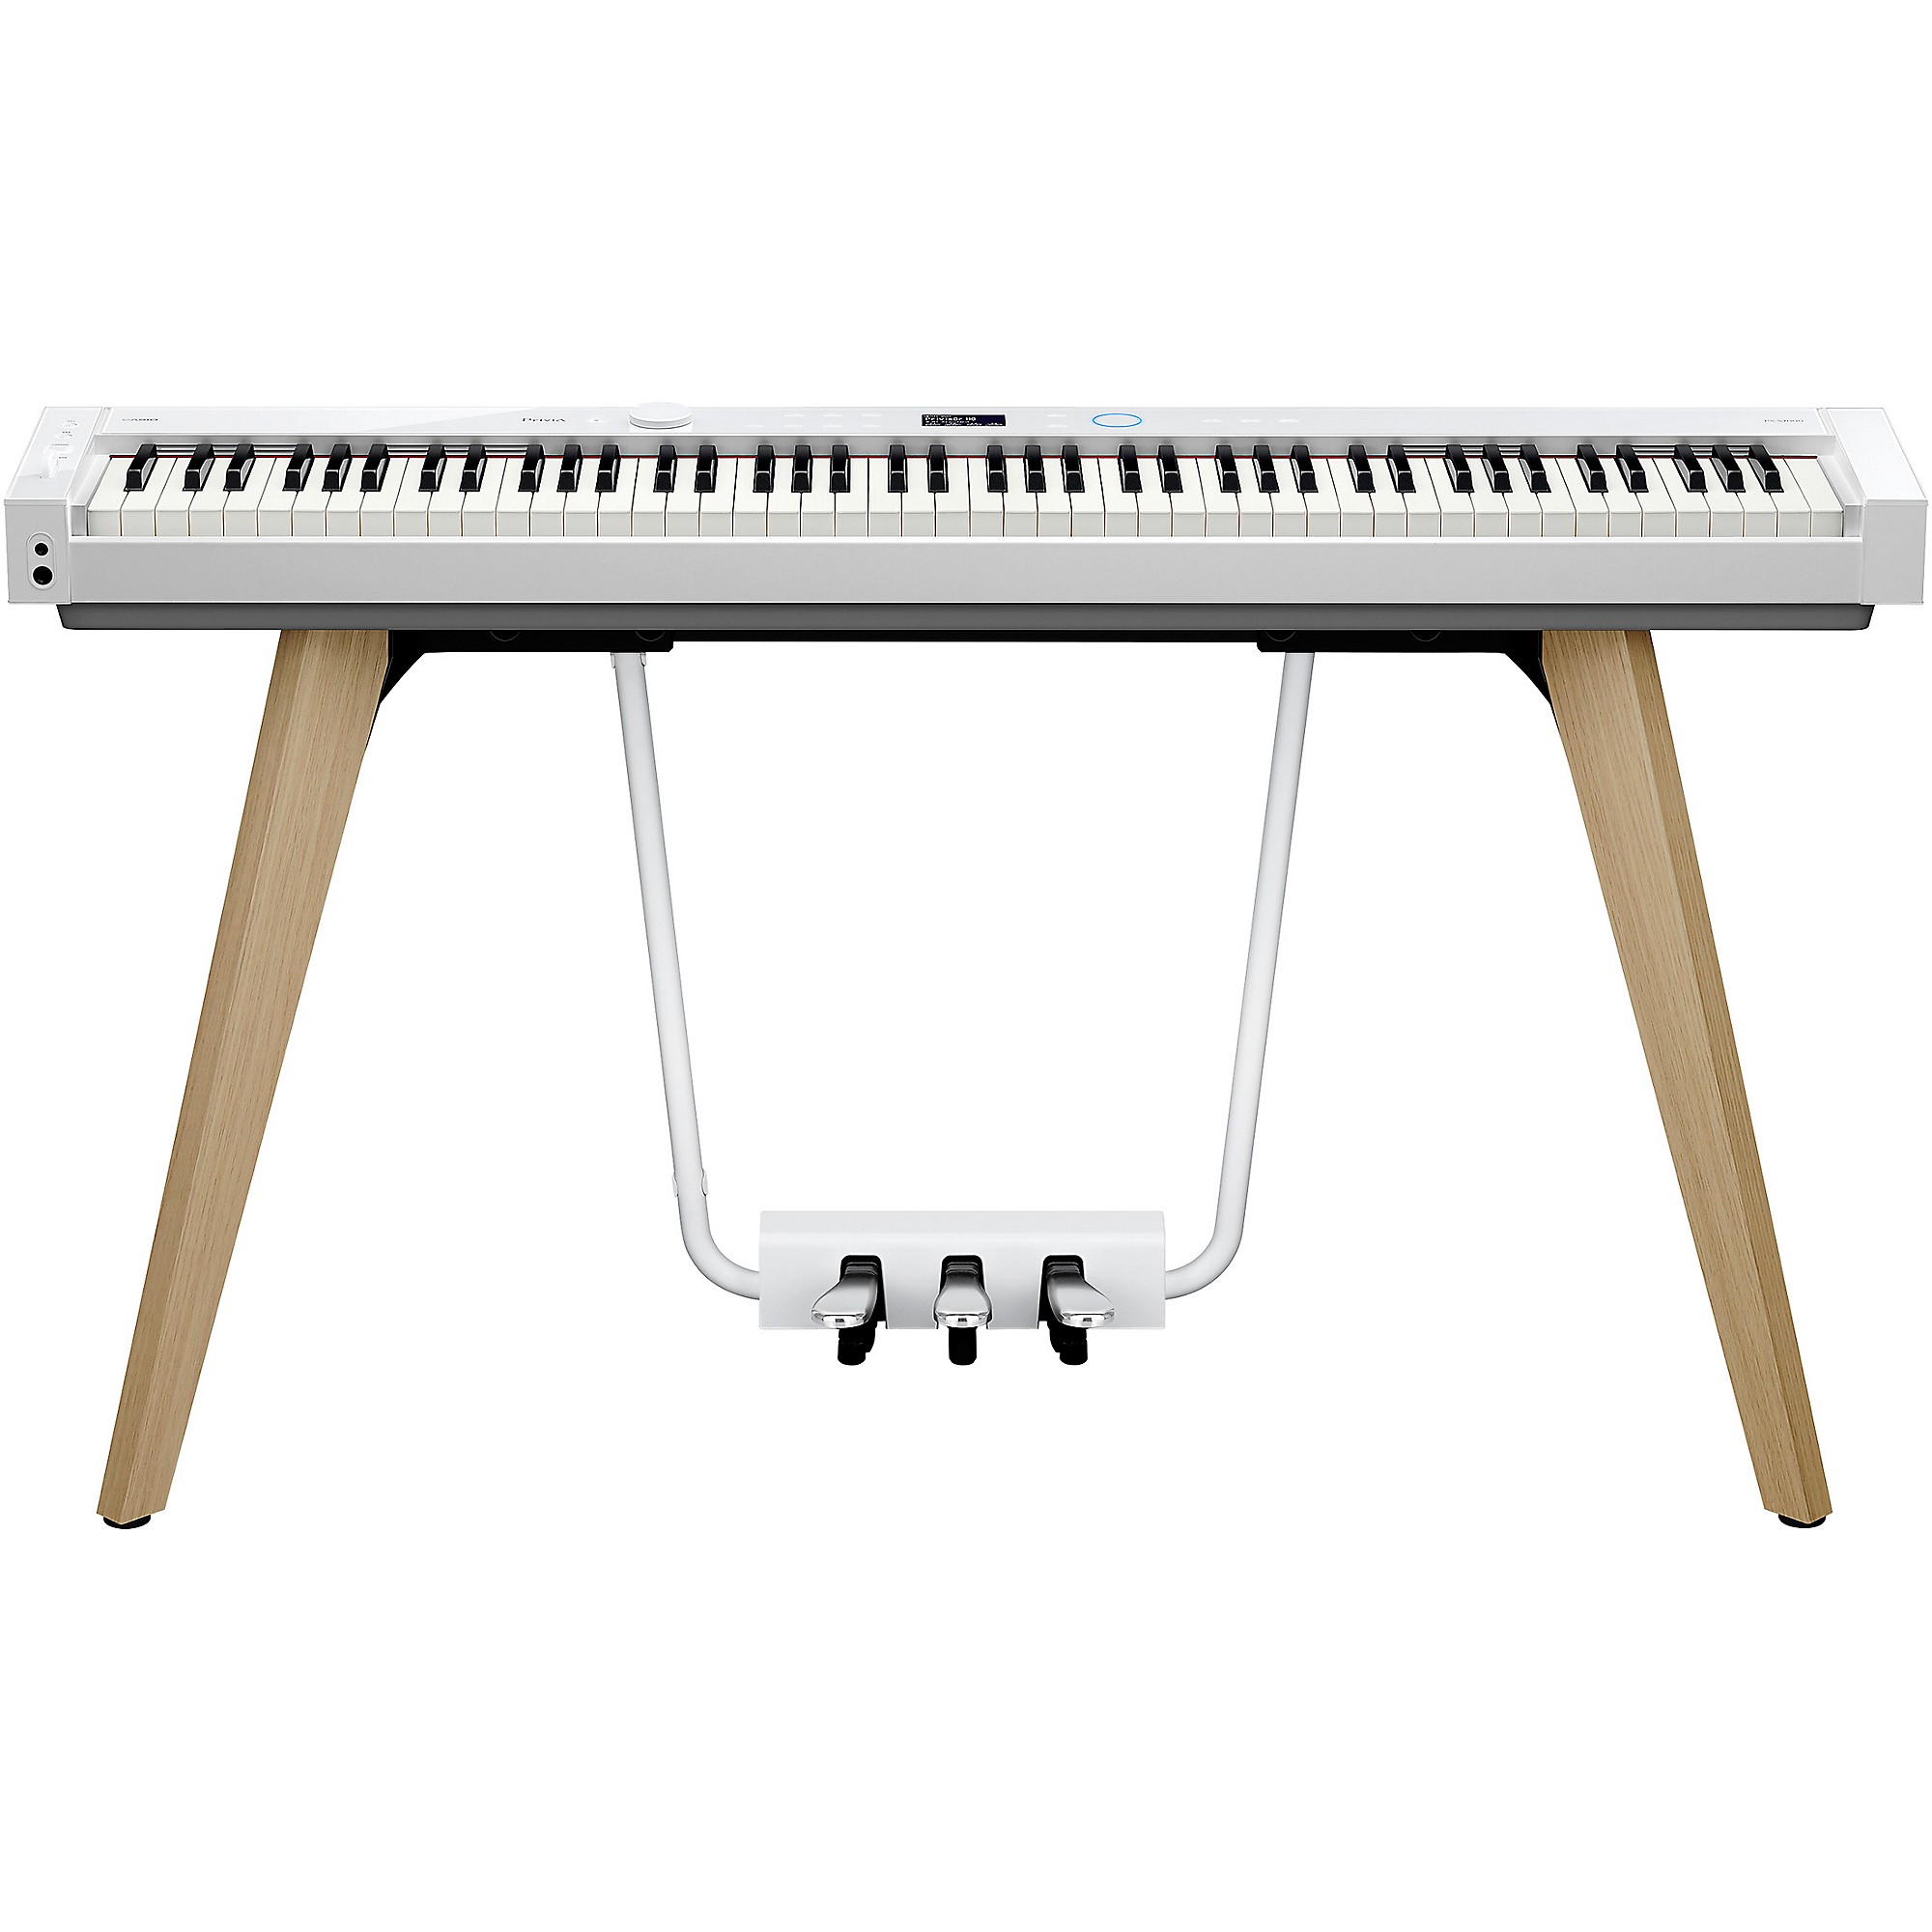 CASIO PX-S7000 HM - Piano numérique 88 touches 256 voix - Rockamusic